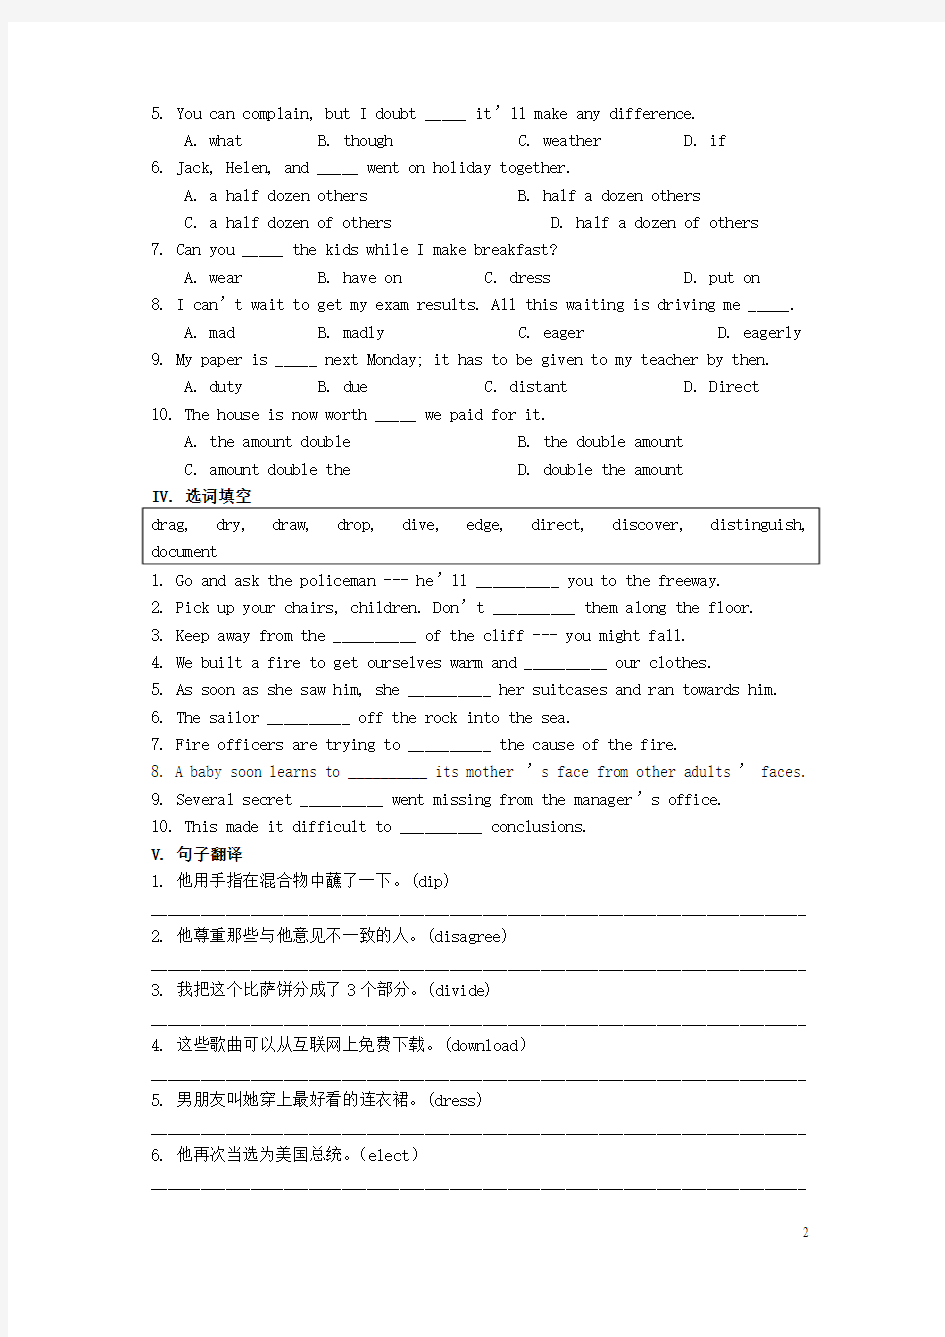 上海市高考英语核心词汇复习第8课时(digestelectronic)